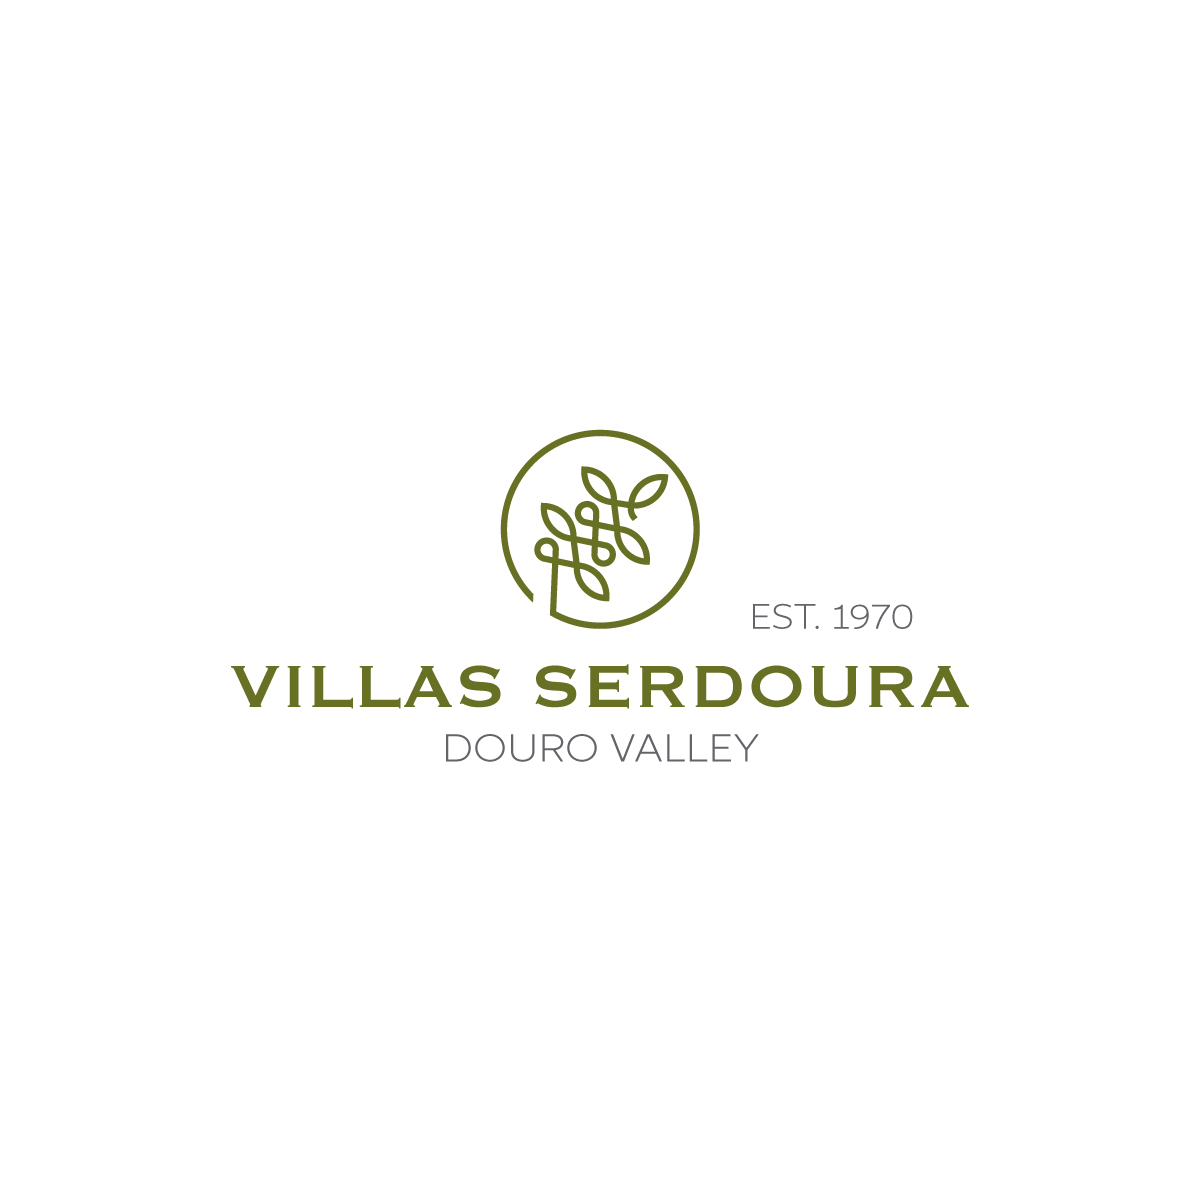 Villas Serdouras